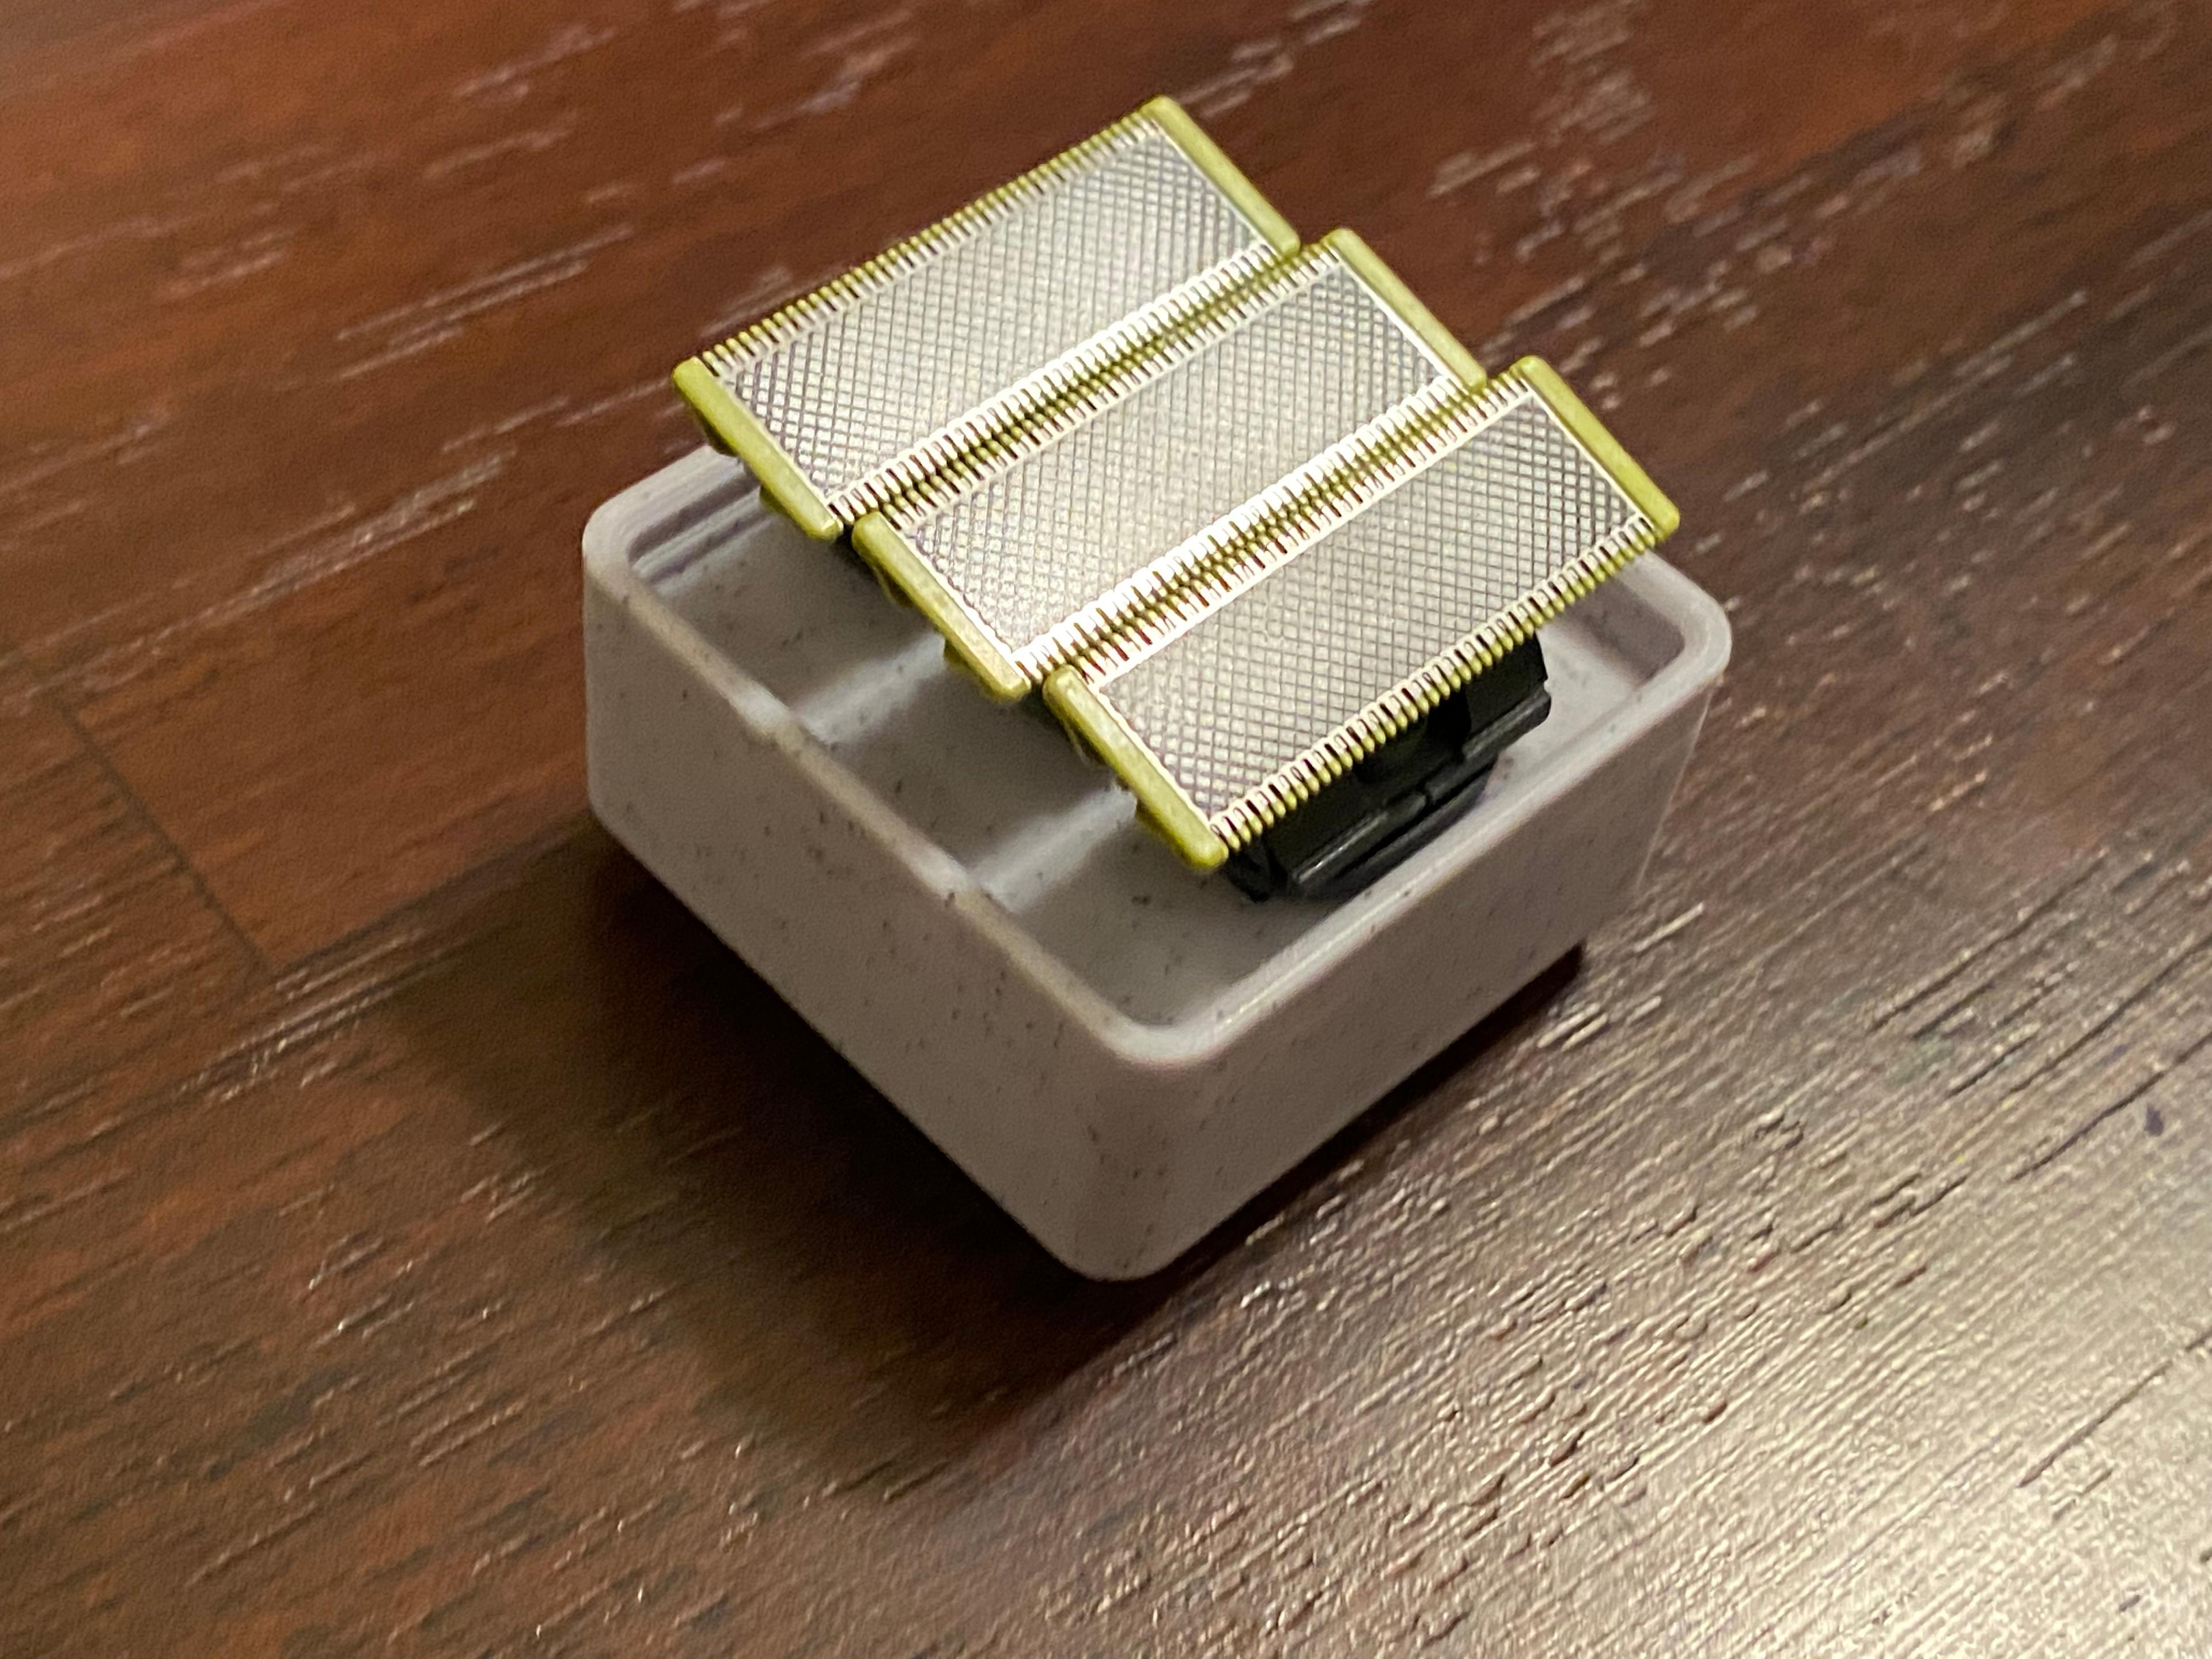 GridFinity hexagonal bit module (4mm & 1/4) - 3D model by kompetenzbolzen  on Thangs